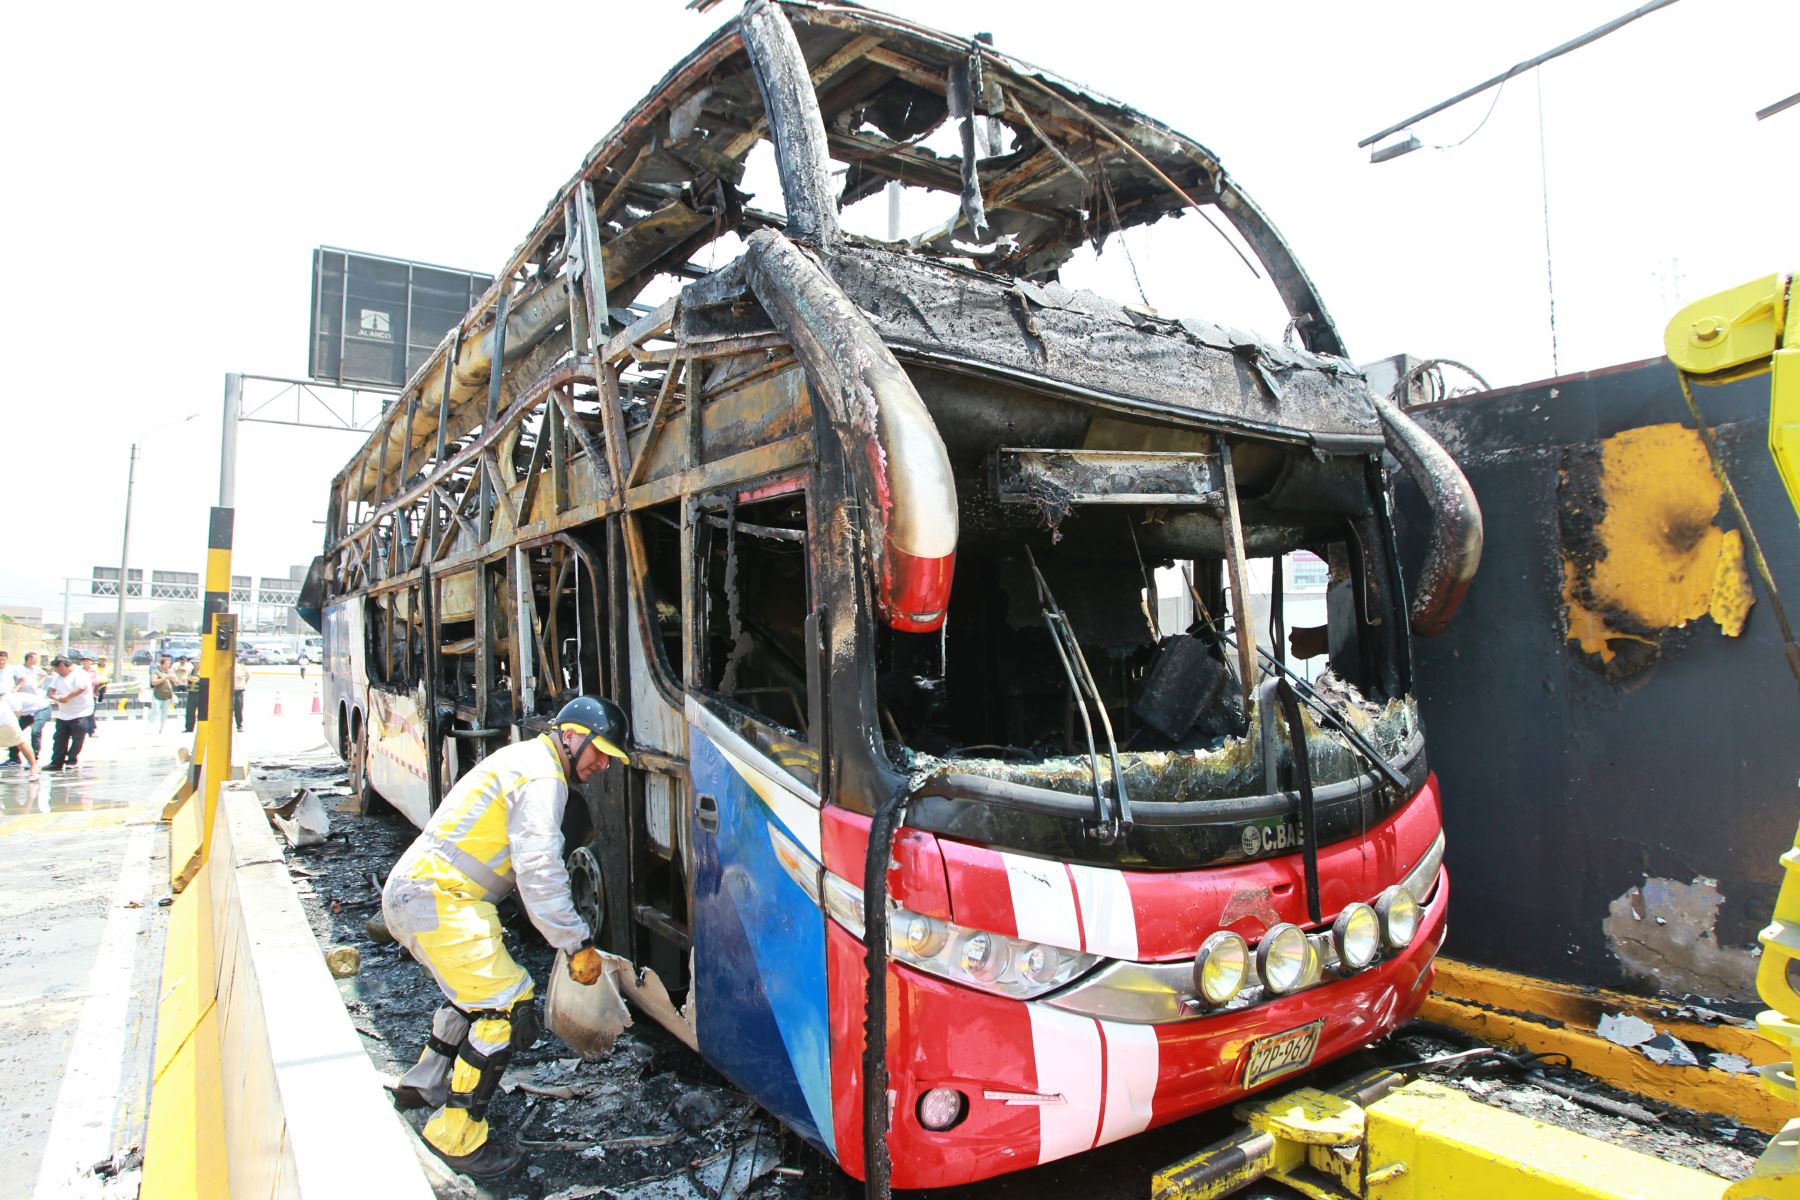 Bus interprovincial se incendió en Vía de Evitamiento. Foto: ANDINA/Dante Zegarra